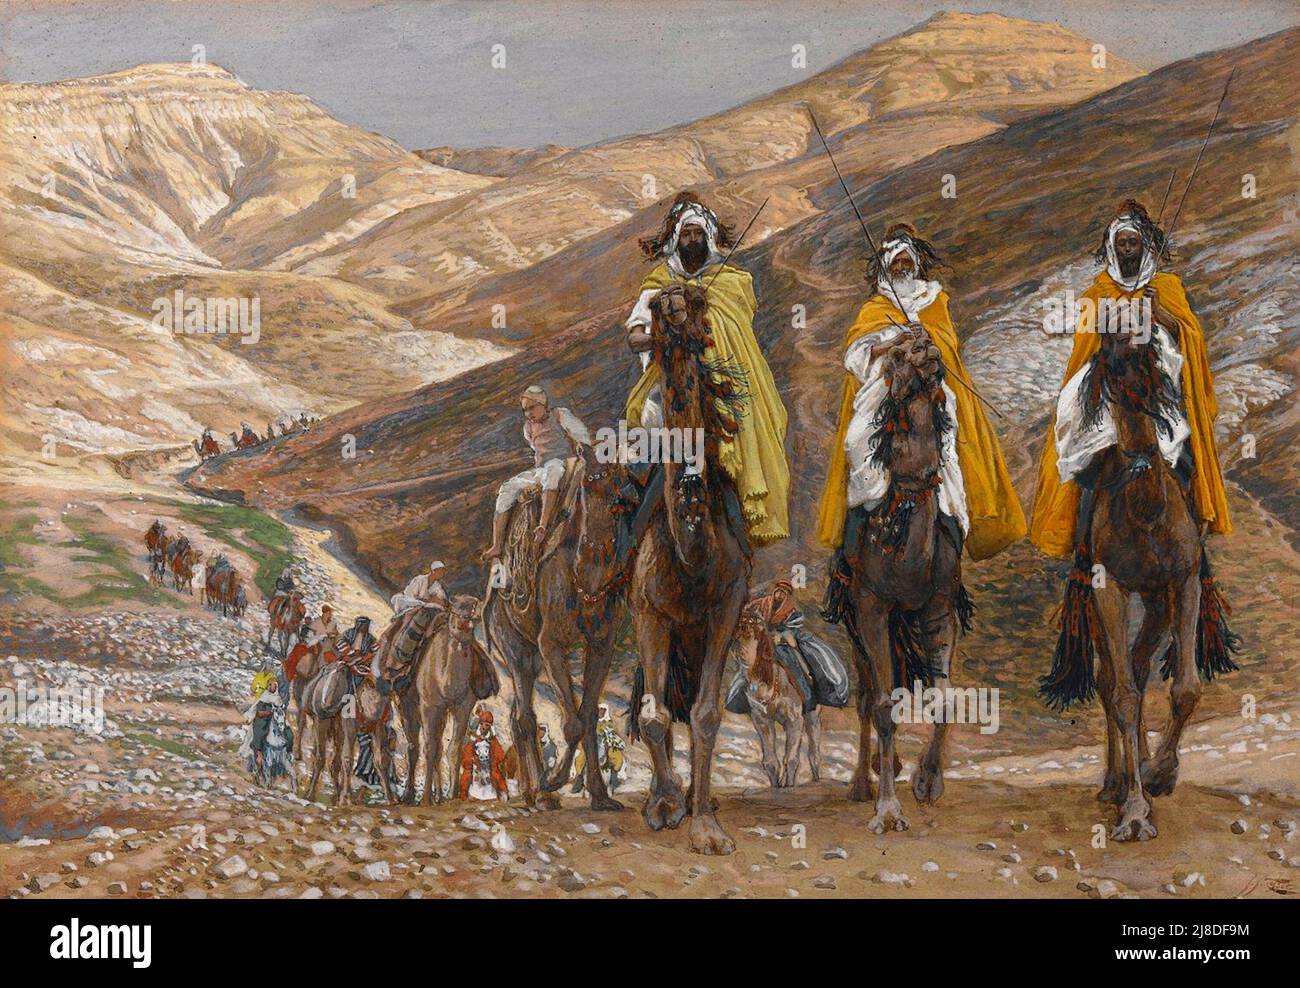 I Magi in viaggio - i tre saggi della leggenda cristiana in viaggio nel deserto per andare a vedere Gesù. Dipinto da James Tissot. Foto Stock